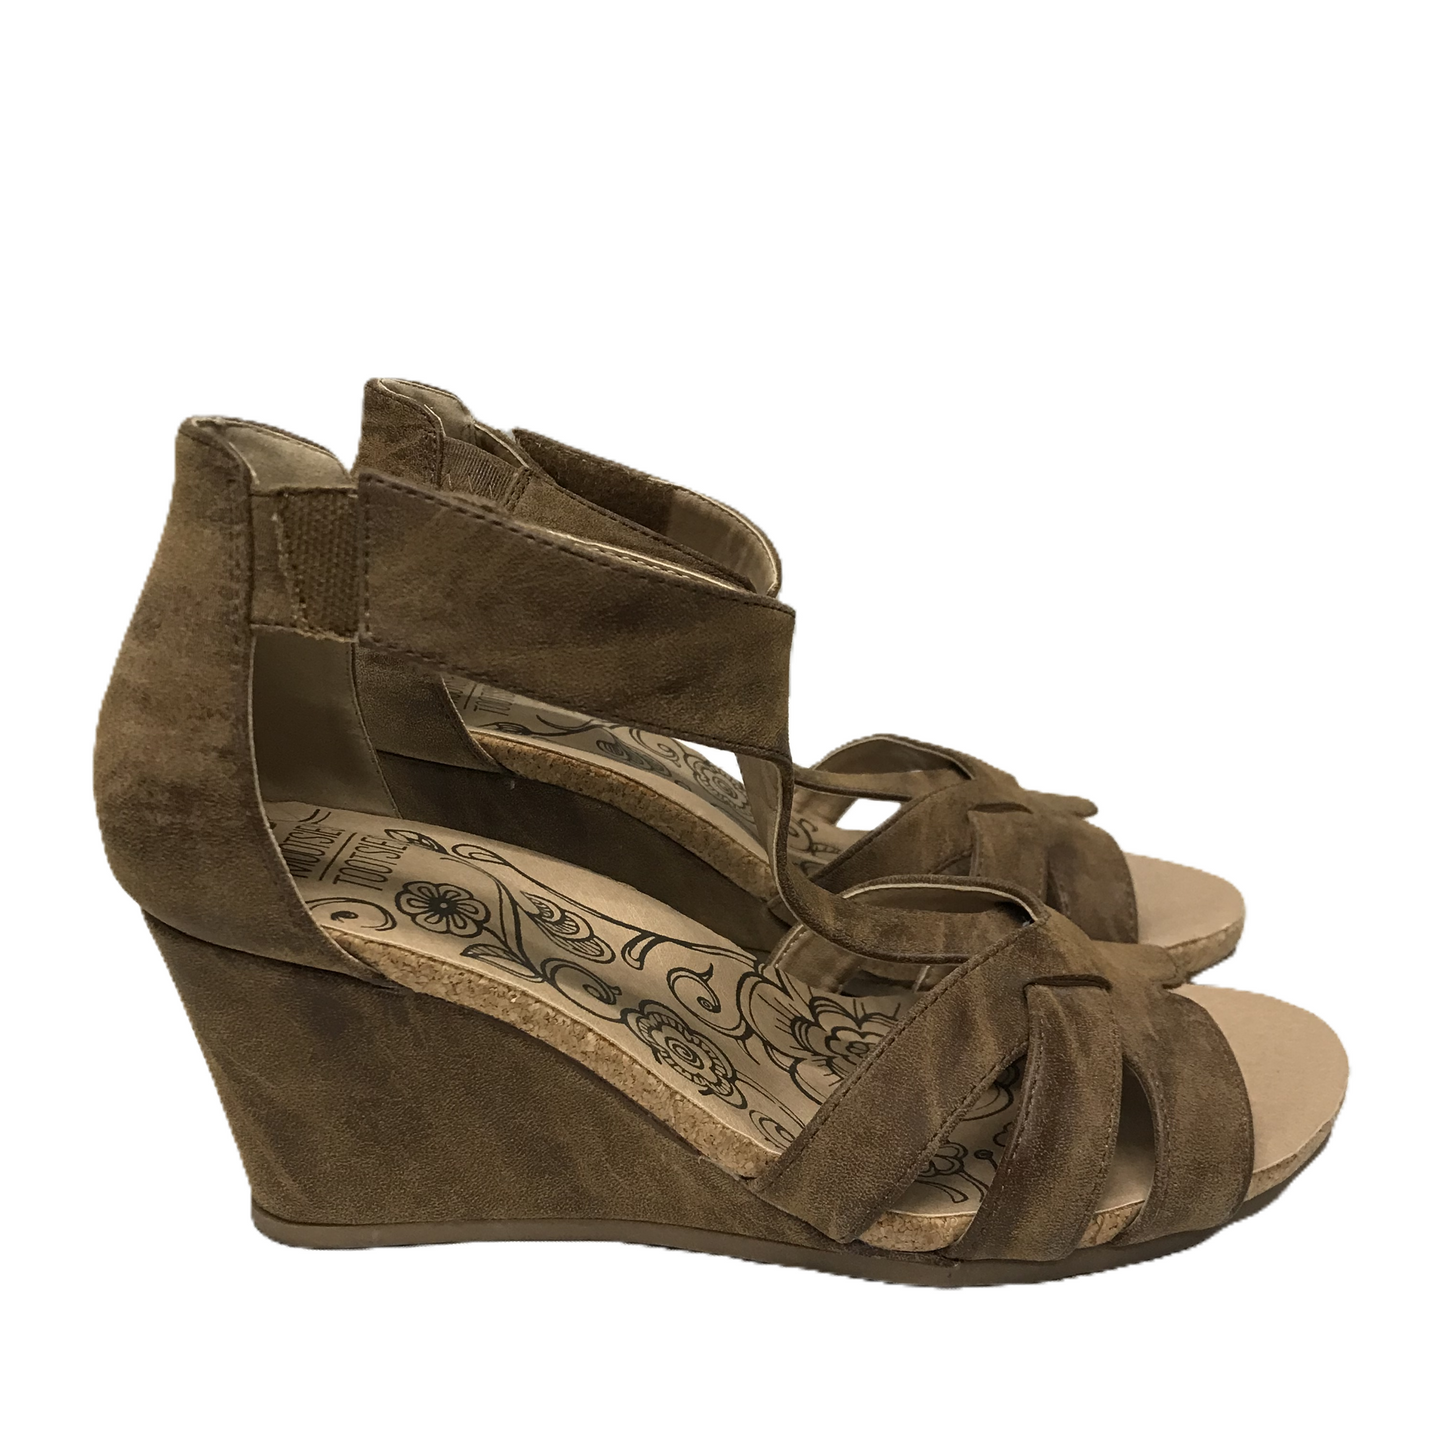 Brown Sandals Heels Wedge By Mootsies Tootsies, Size: 8